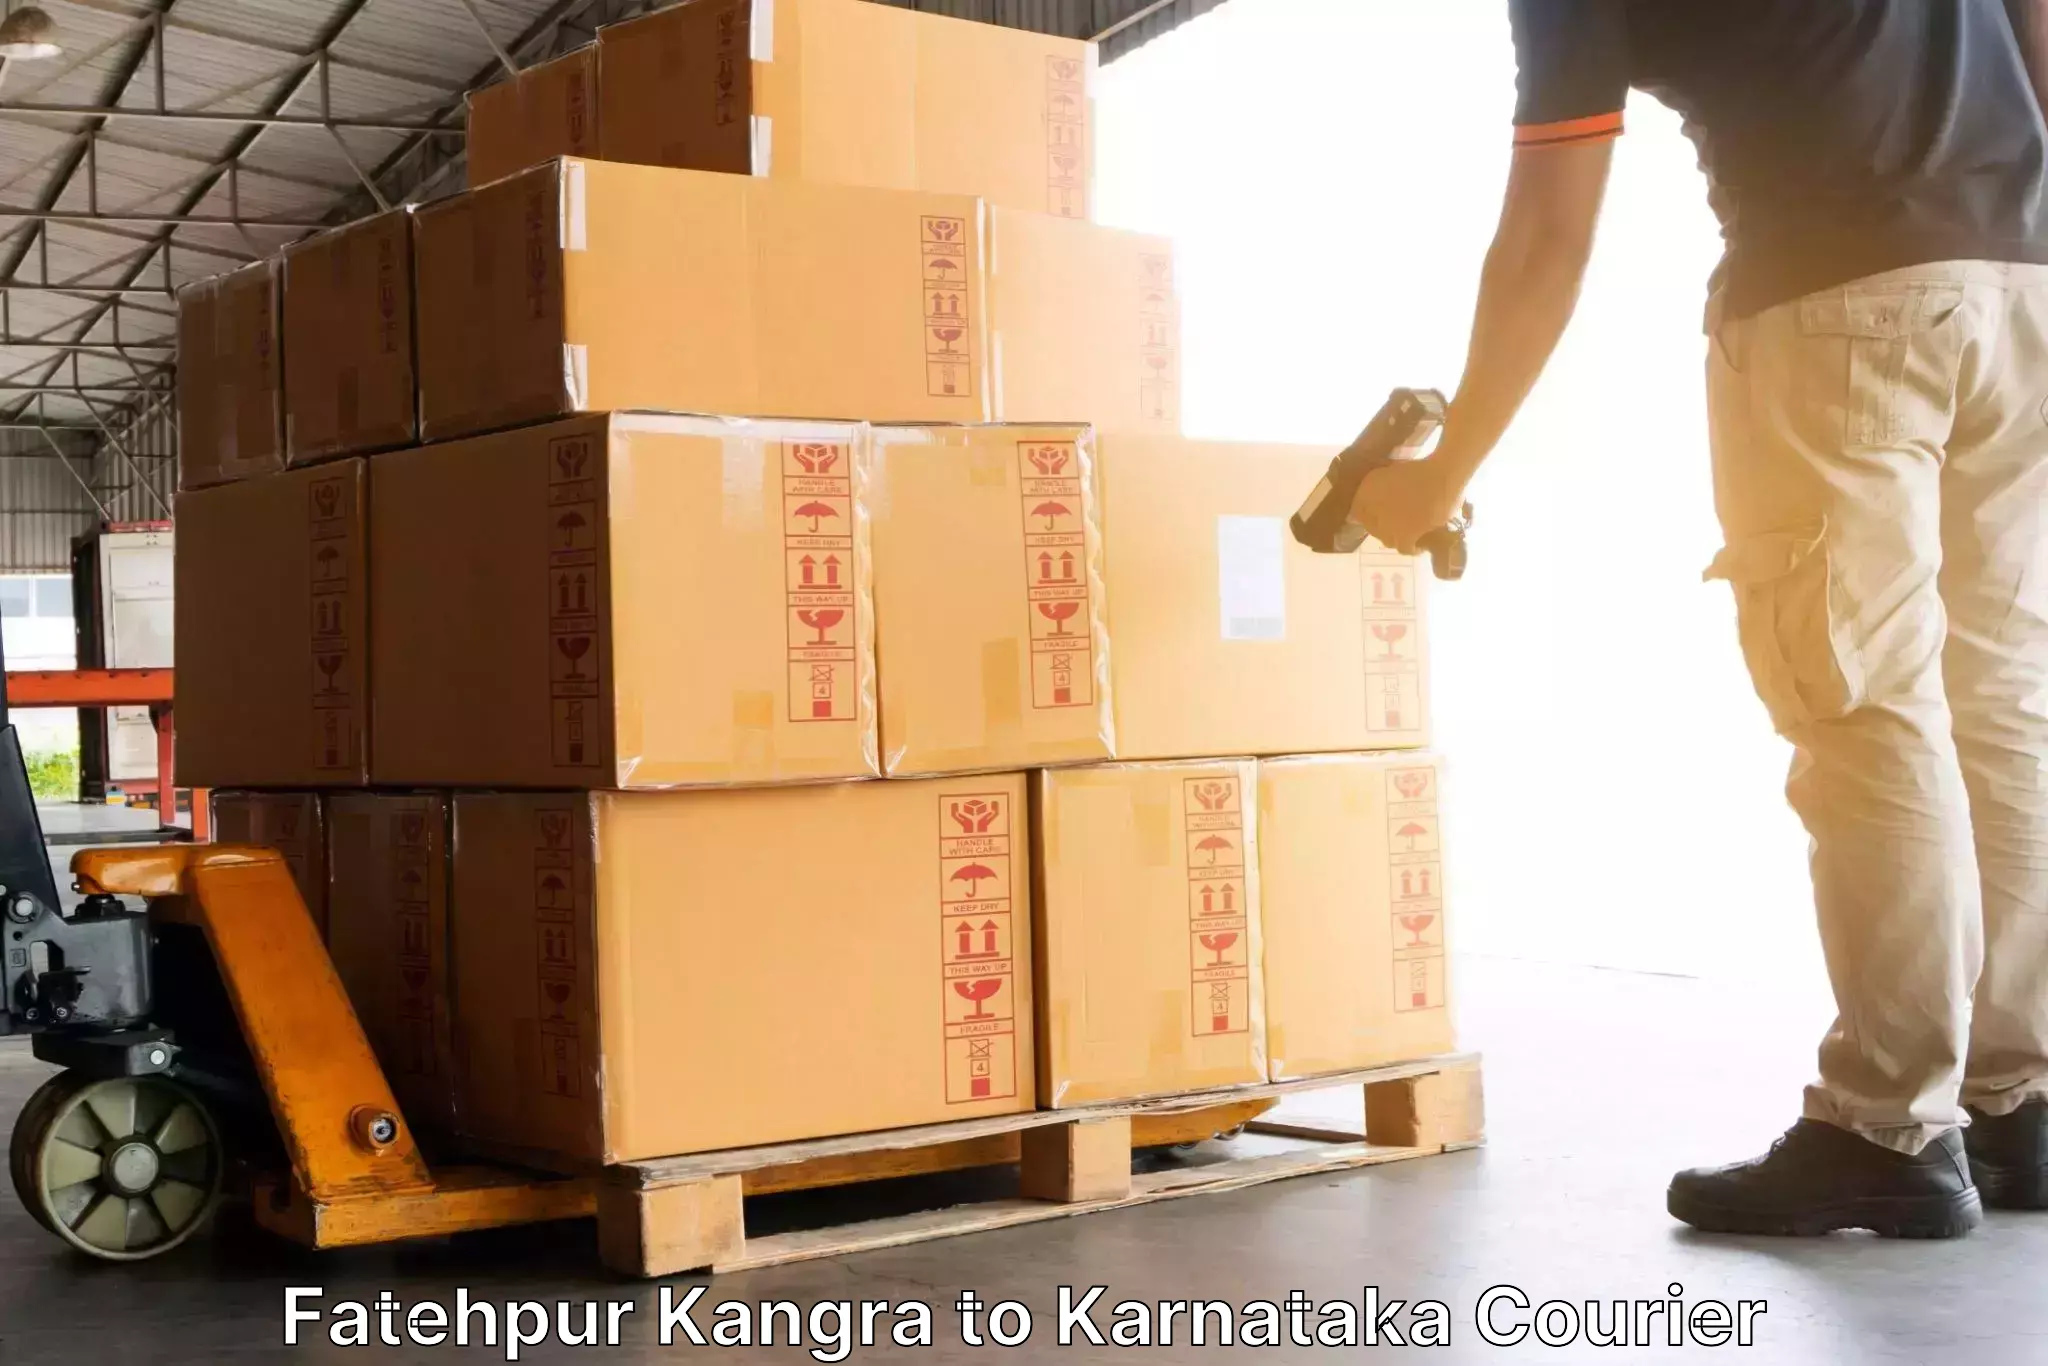 Modern courier technology Fatehpur Kangra to Bagepalli